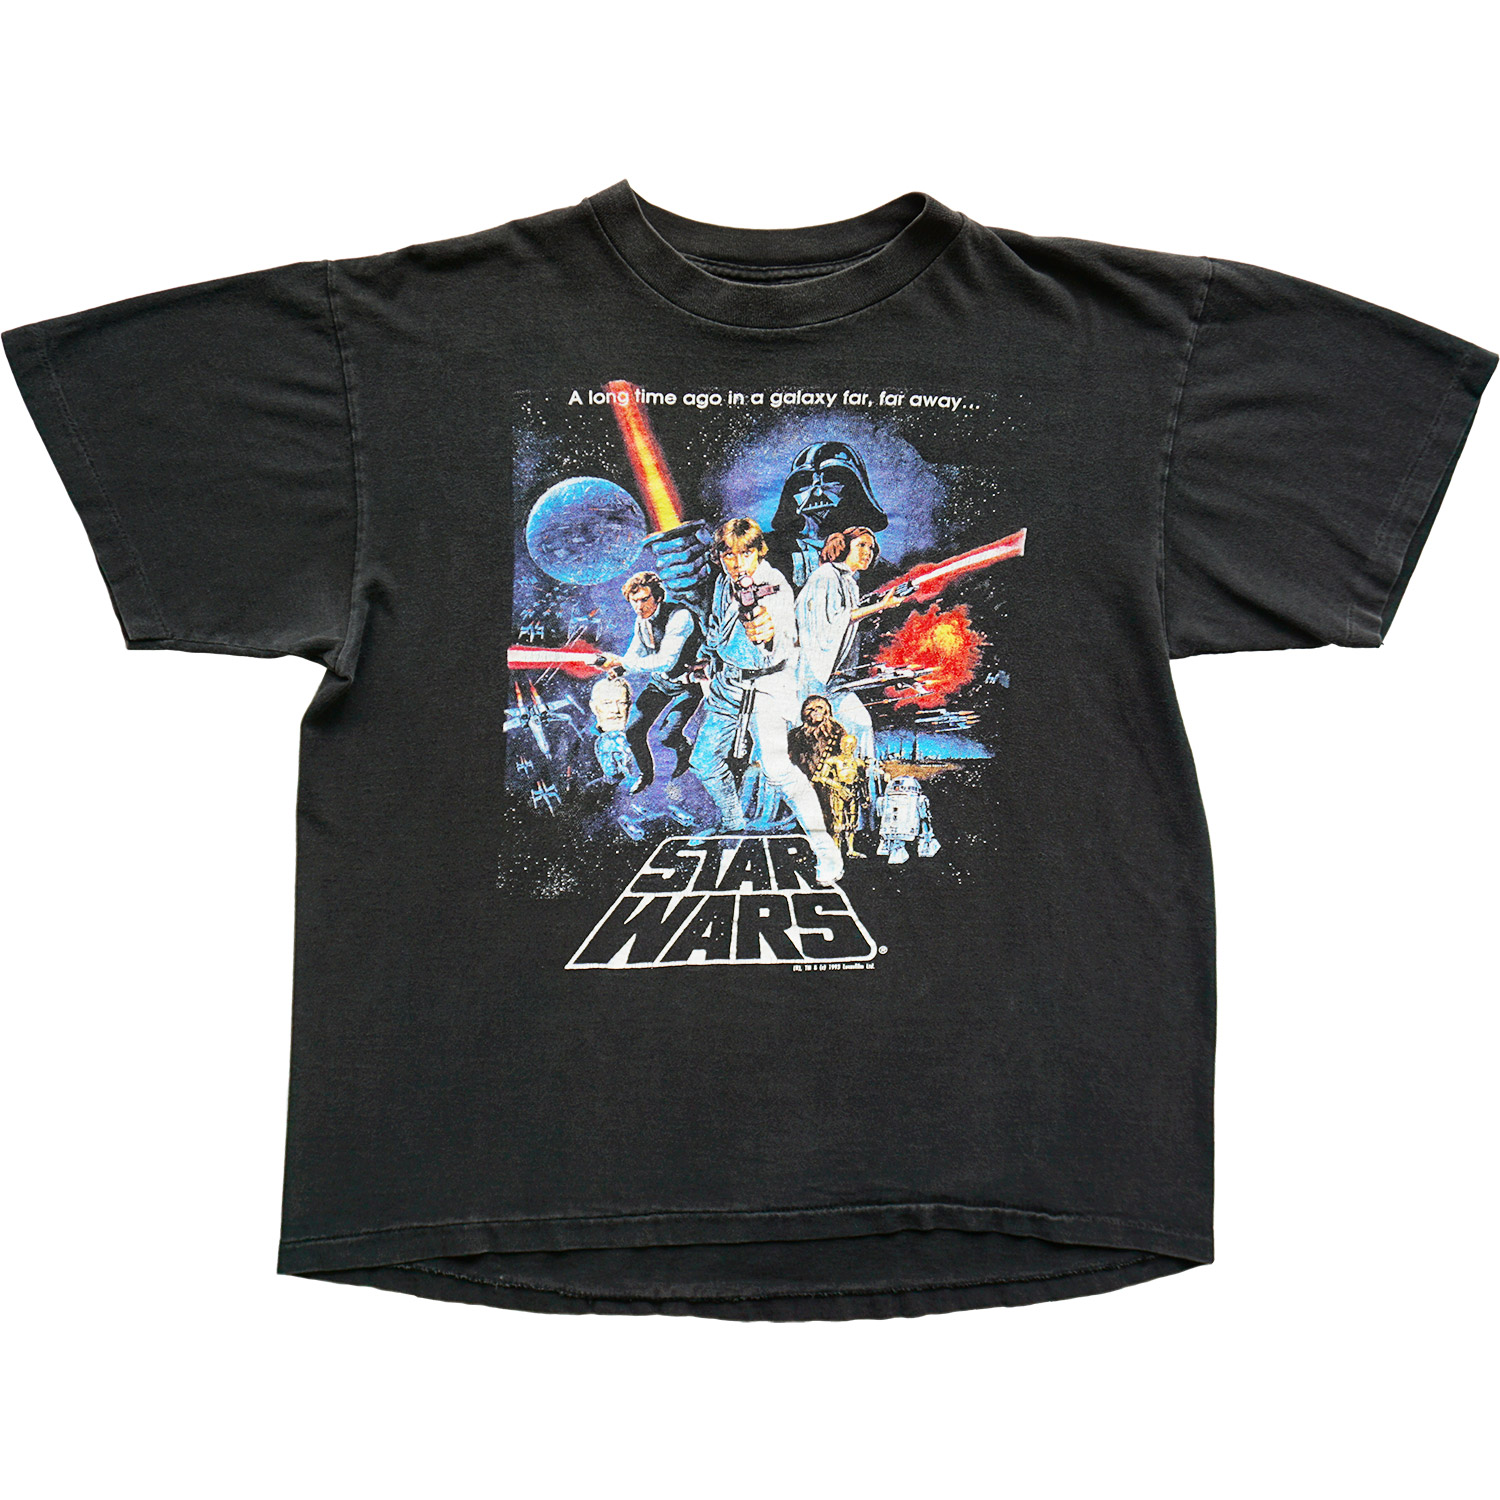 Herhaald basketbal paperback Vintage Star Wars T-shirt, A New Hope Episode IV | Black Shirts World